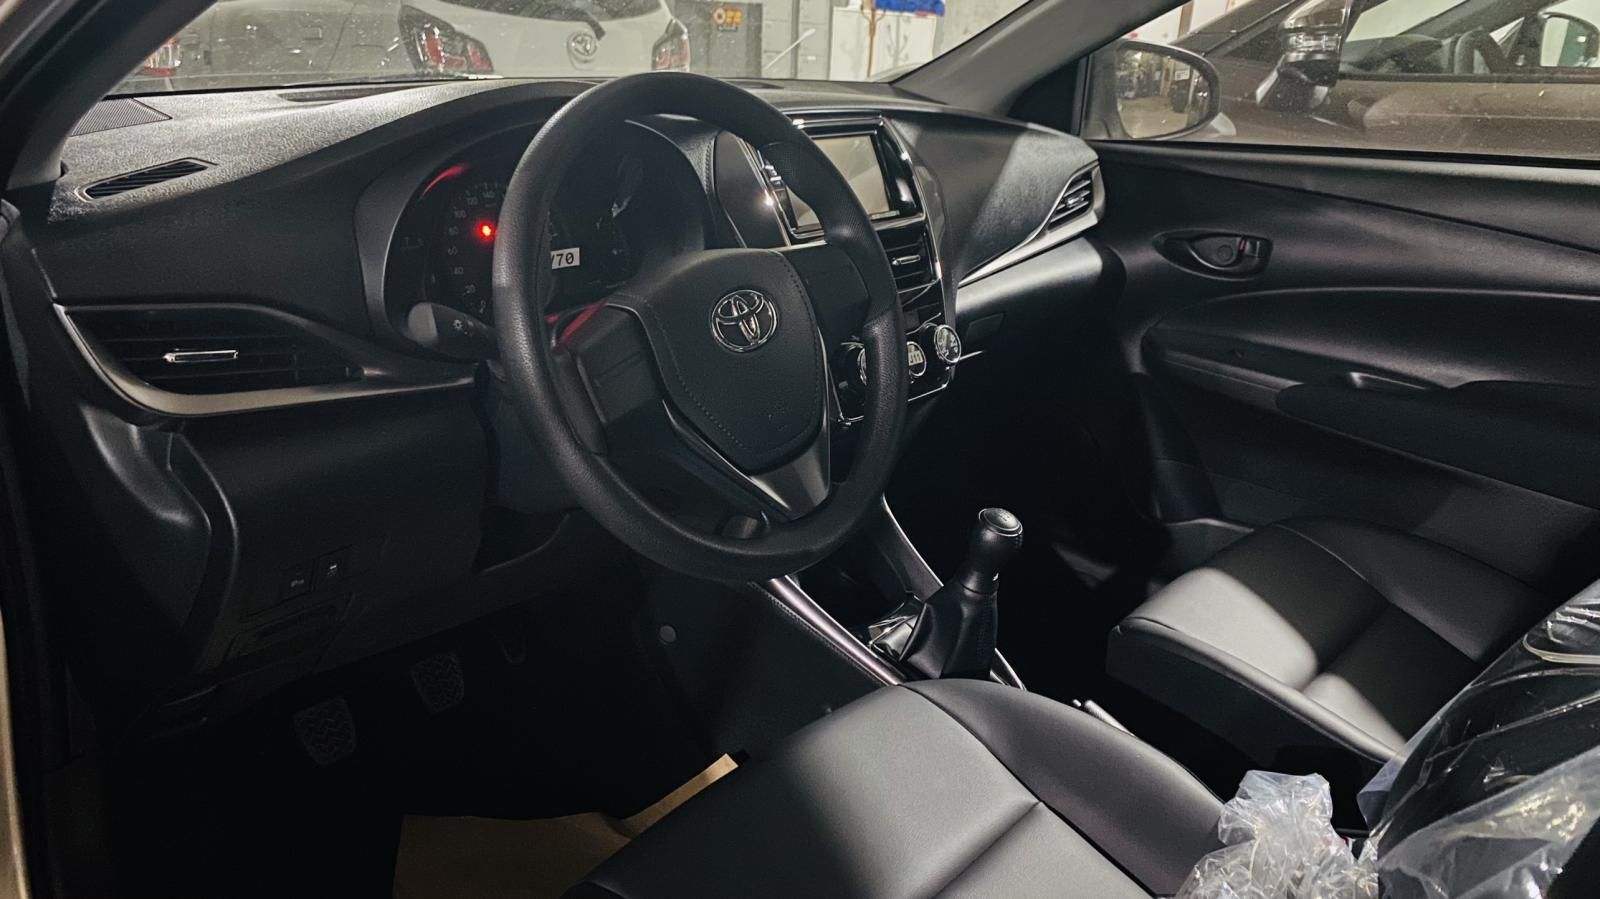 Toyota Vios 2022 - Toyota Vinh - Nghệ An bán xe giá rẻ nhất Nghệ An, khuyến mãi khủng, trả góp 80% lãi suất thấp